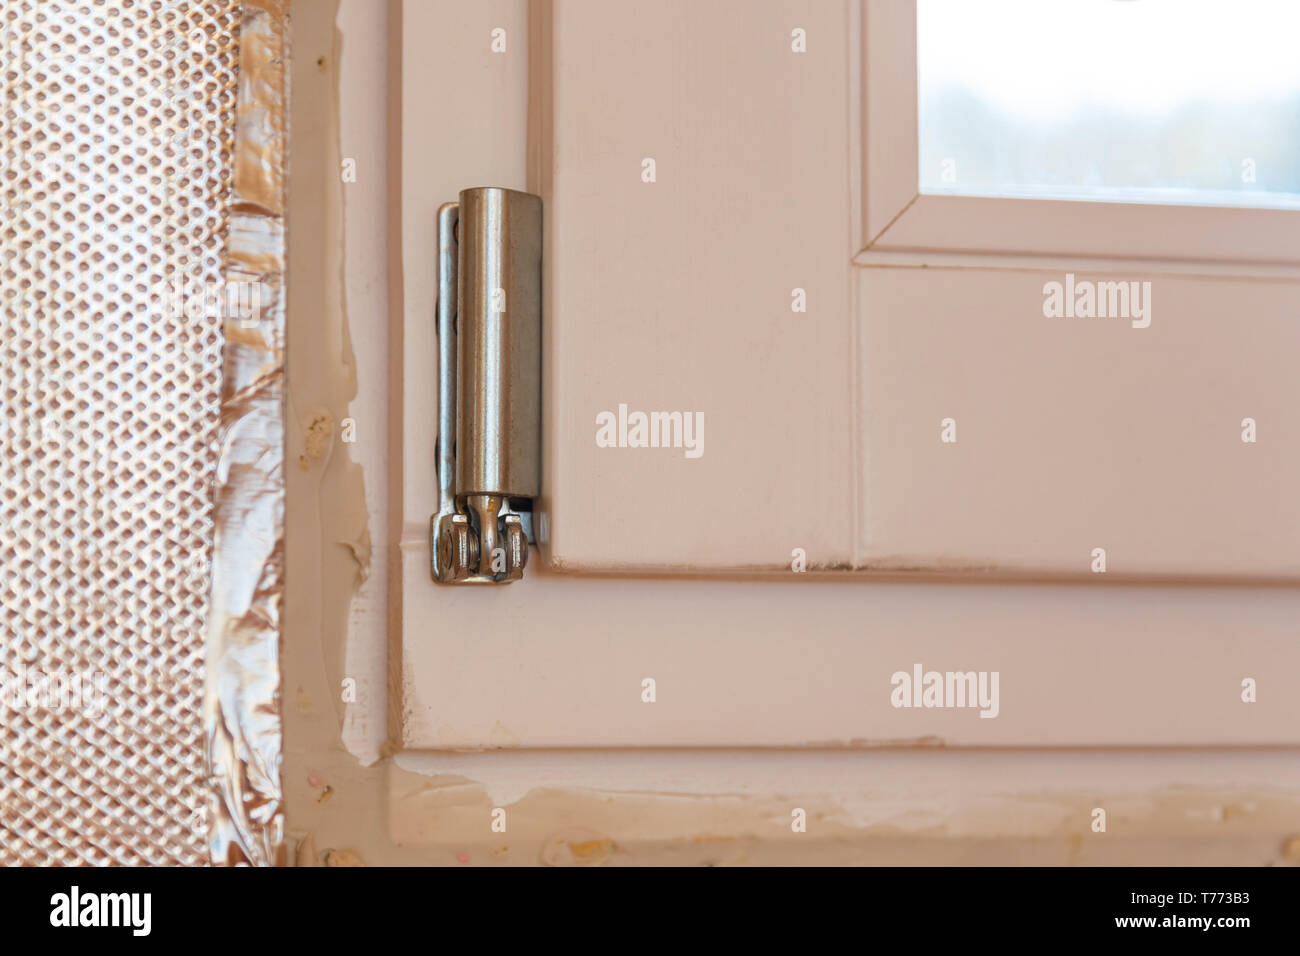 alte weiße Fenster Scharnier Stockfotografie - Alamy